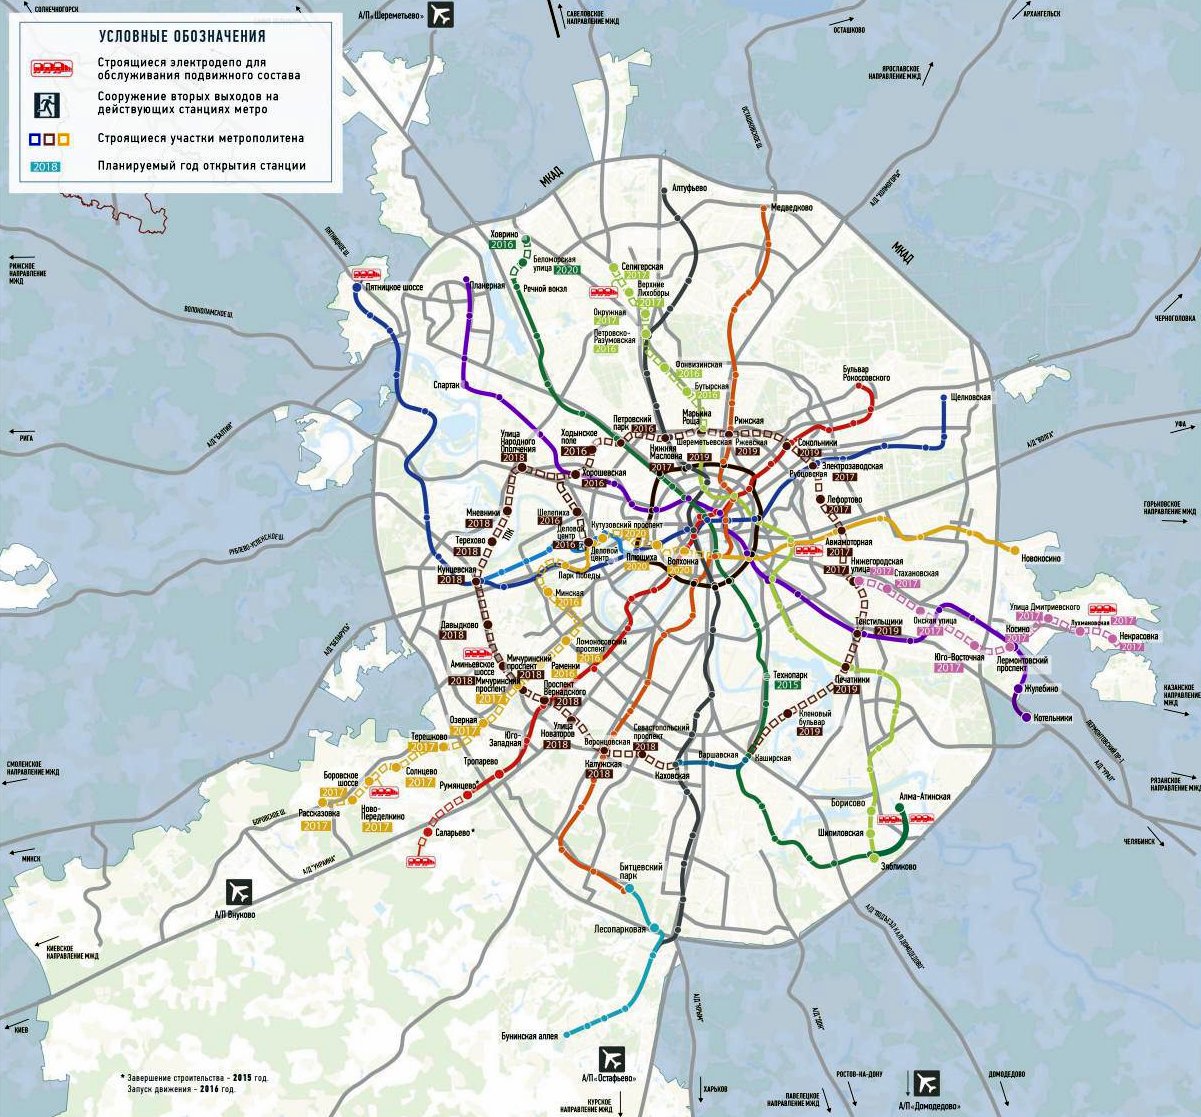 карта схема метро москвы 2020 года кредитными организациями резервов на возможные